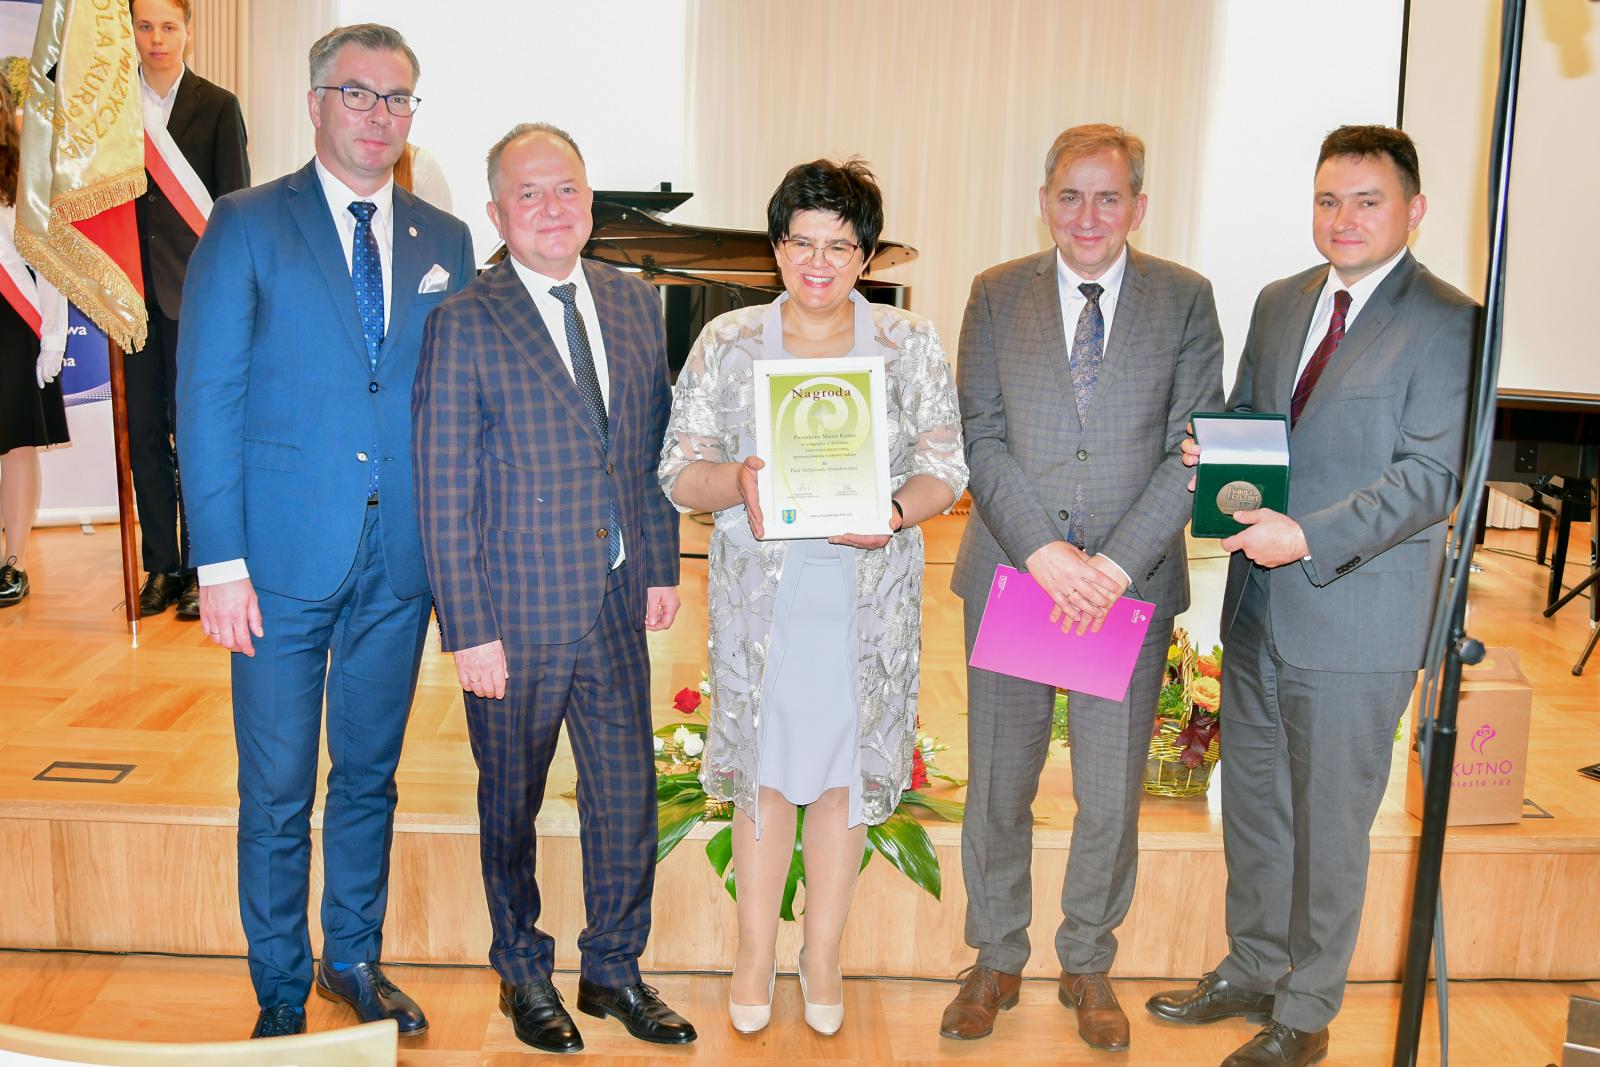 Wręczenia nagrody dokonano w dniu 14 października 2021 roku podczas jubileuszu 75-lecia Państwowej Szkoły Muzycznej I i II st. im. Karola Kurpińskiego w Kutnie.